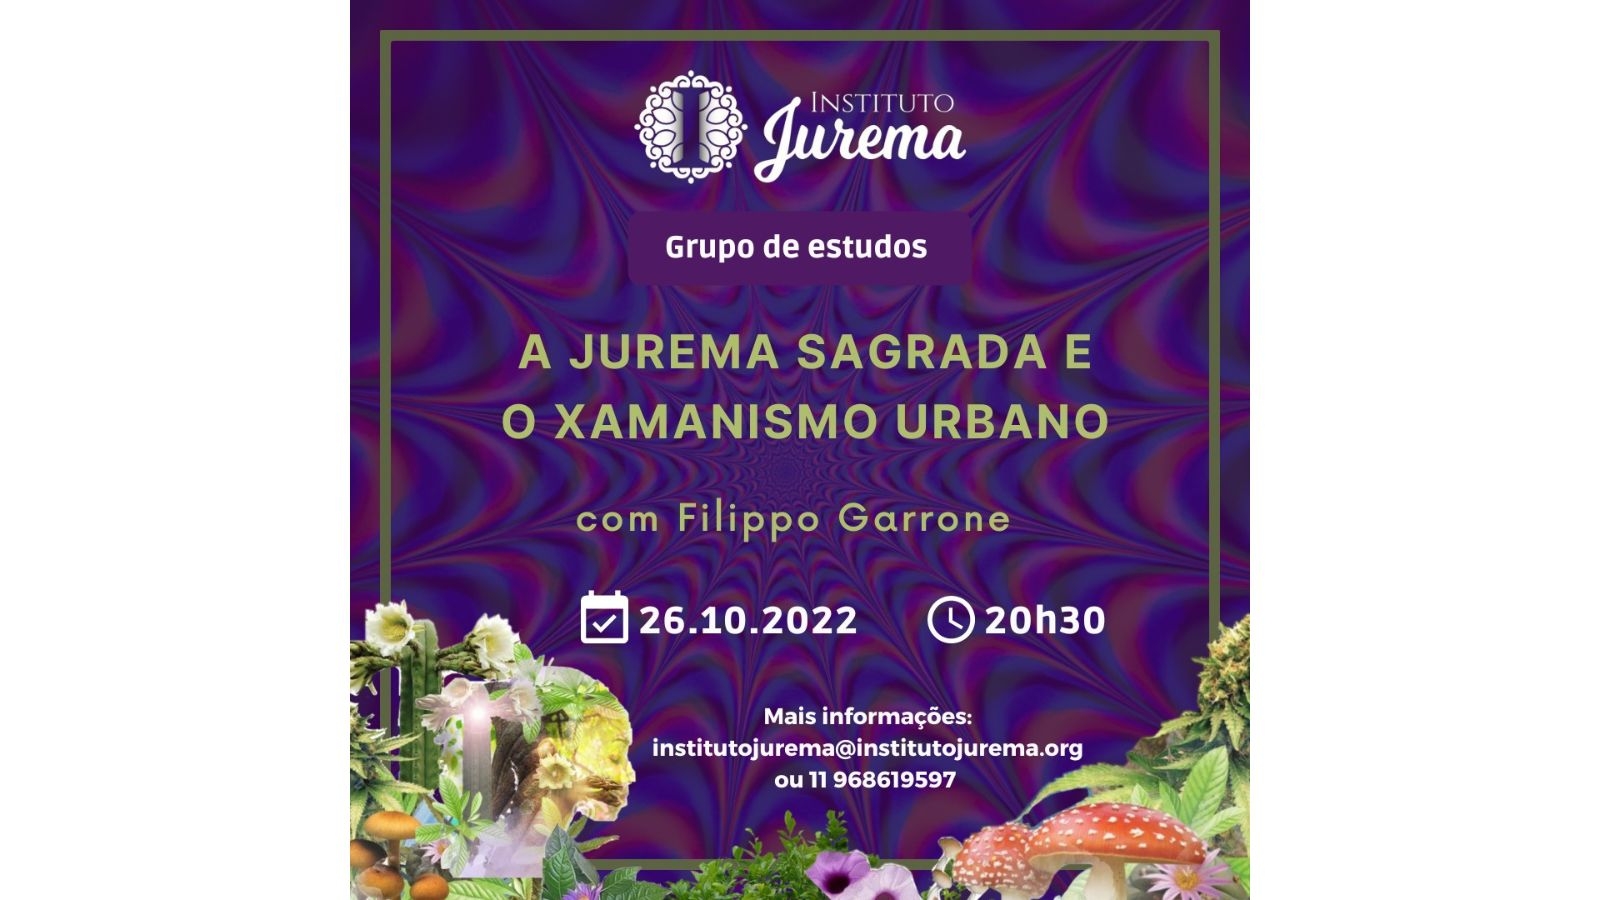 Instituto Jurema 1600 x 900